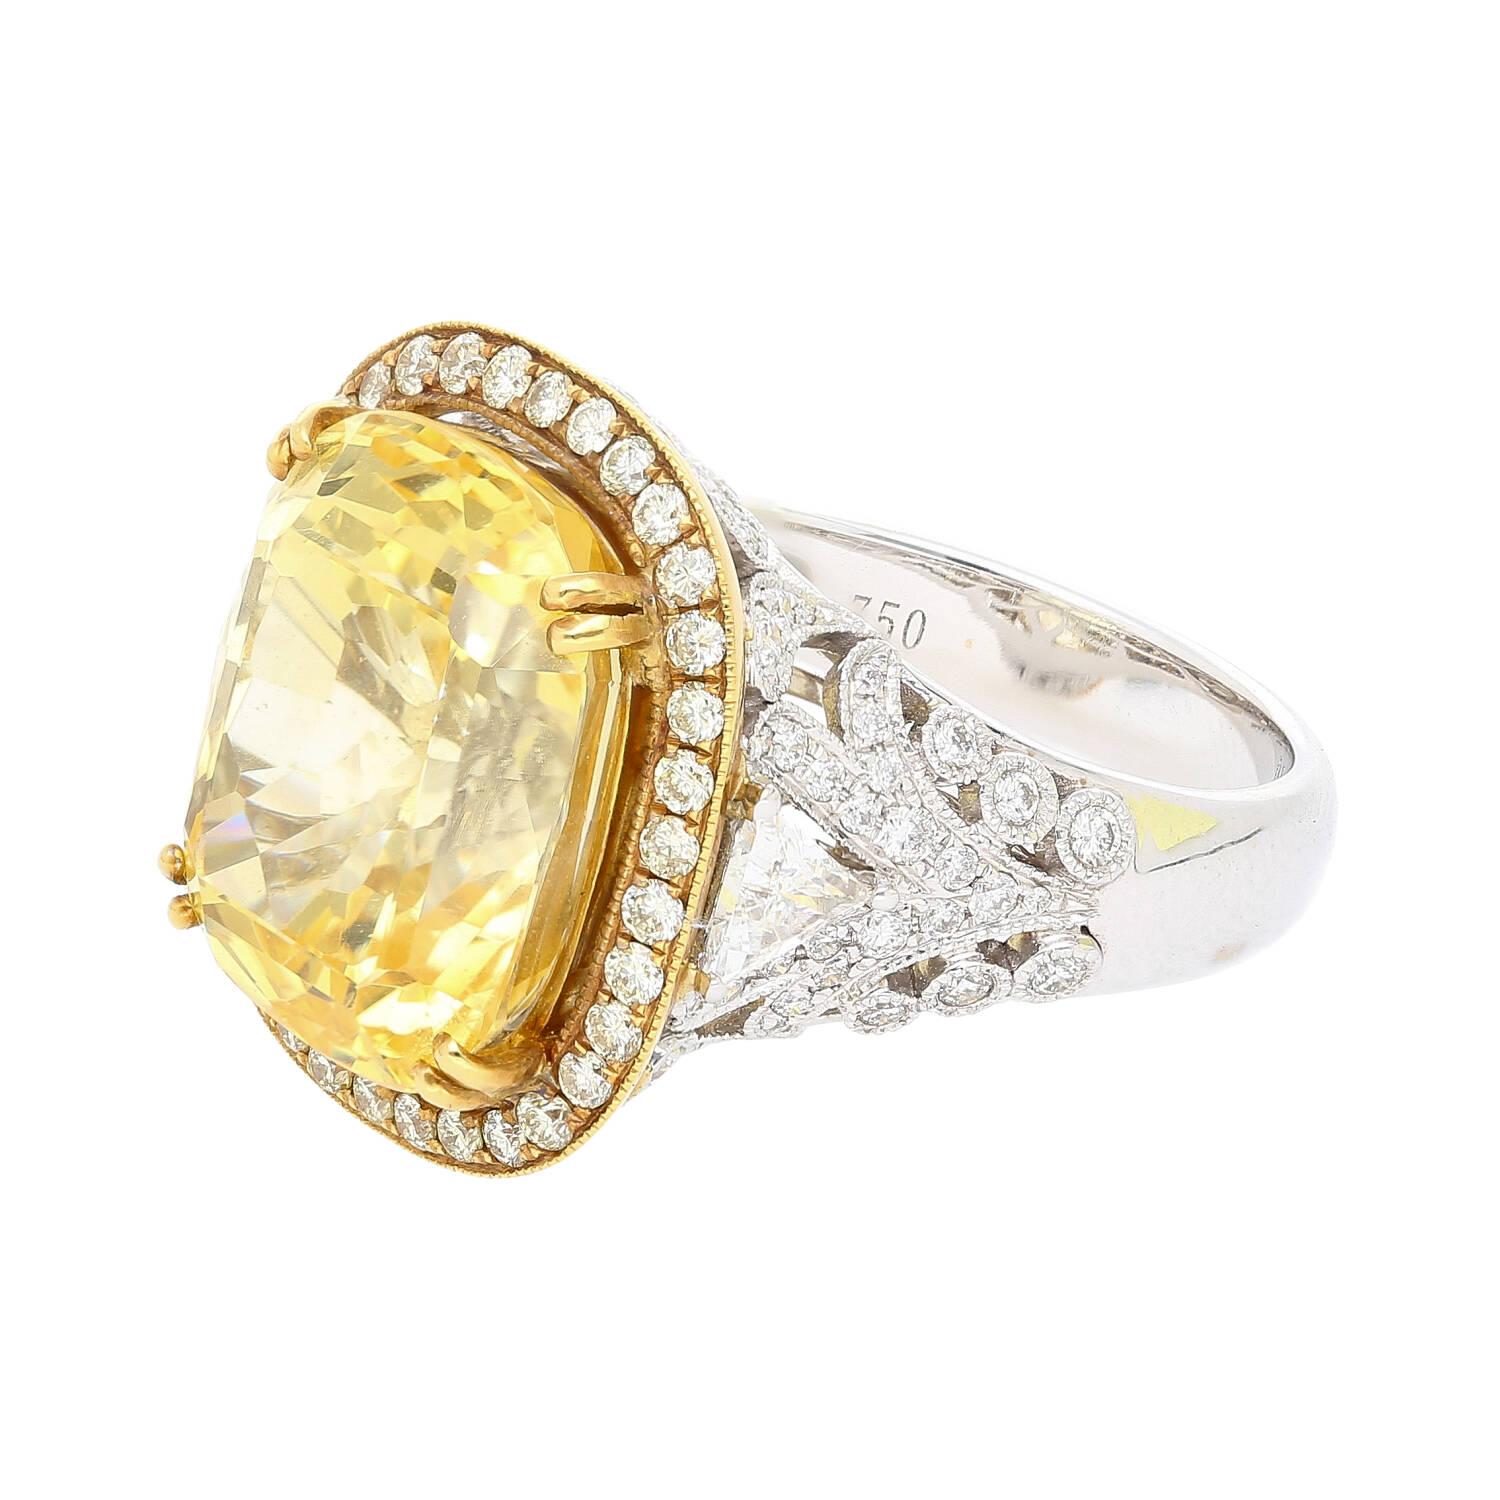 Entdecken Sie unvergleichliche Eleganz mit diesem königlichen Ring aus 18-karätigem Weißgold mit 17 Karat gelbem Saphir im Kissenschliff und Diamanten im Billionenschliff. Ein wahres Meisterwerk.

Der GIA-zertifizierte Saphir besticht durch seine